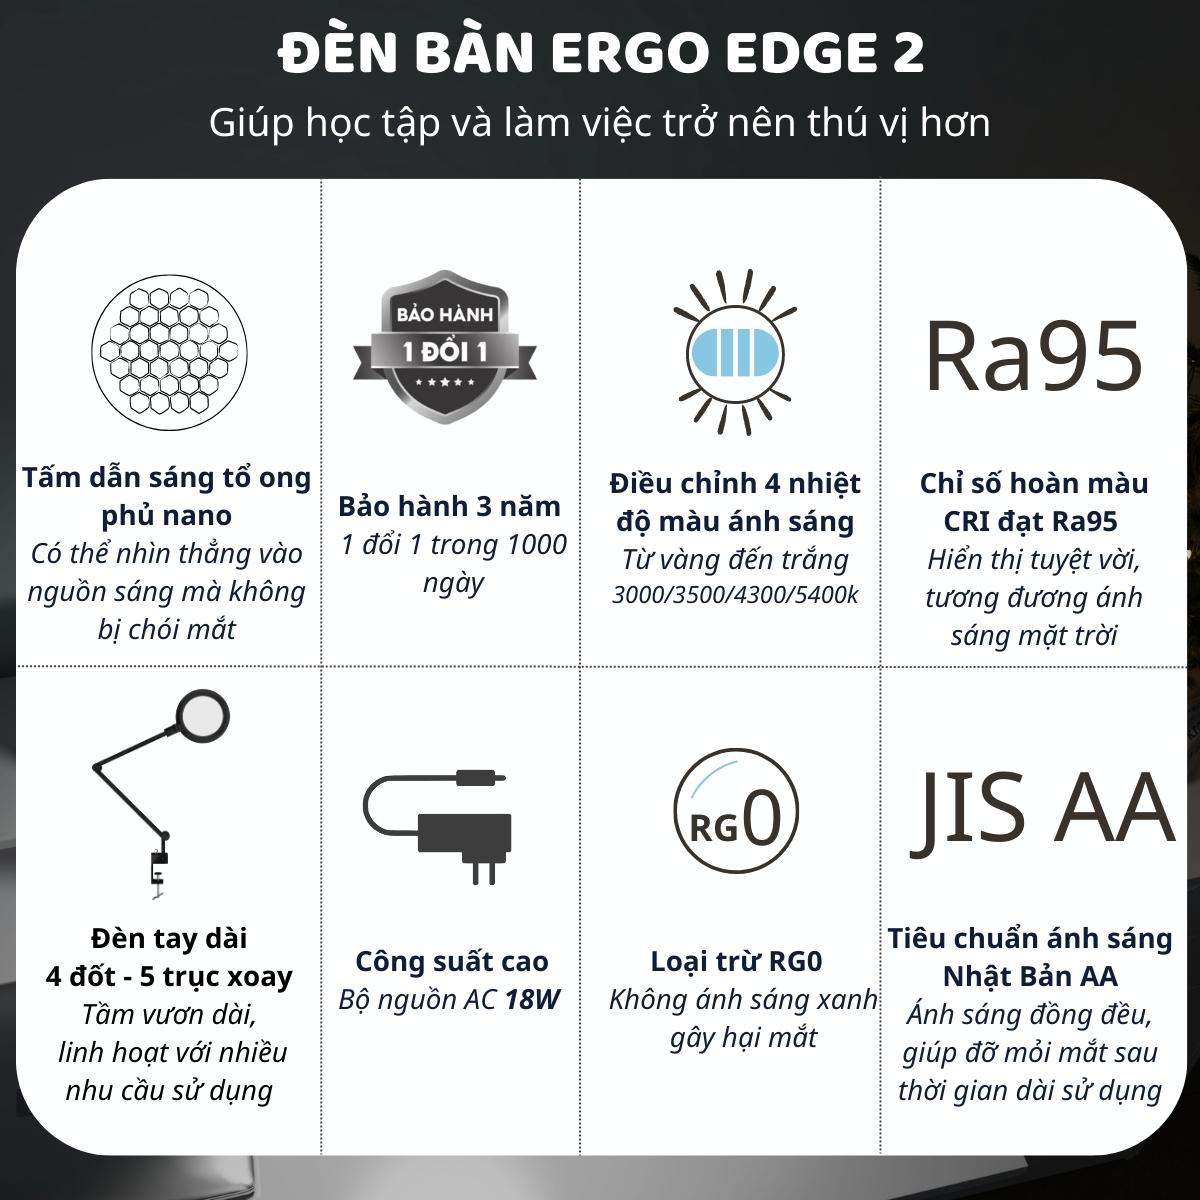 Đèn bàn học Led bảo vệ mắt Ergo Edge 2 DandiHome chống cận để học tập, làm việc, có thể kéo dài, gấp gọn - 4 chế độ sáng